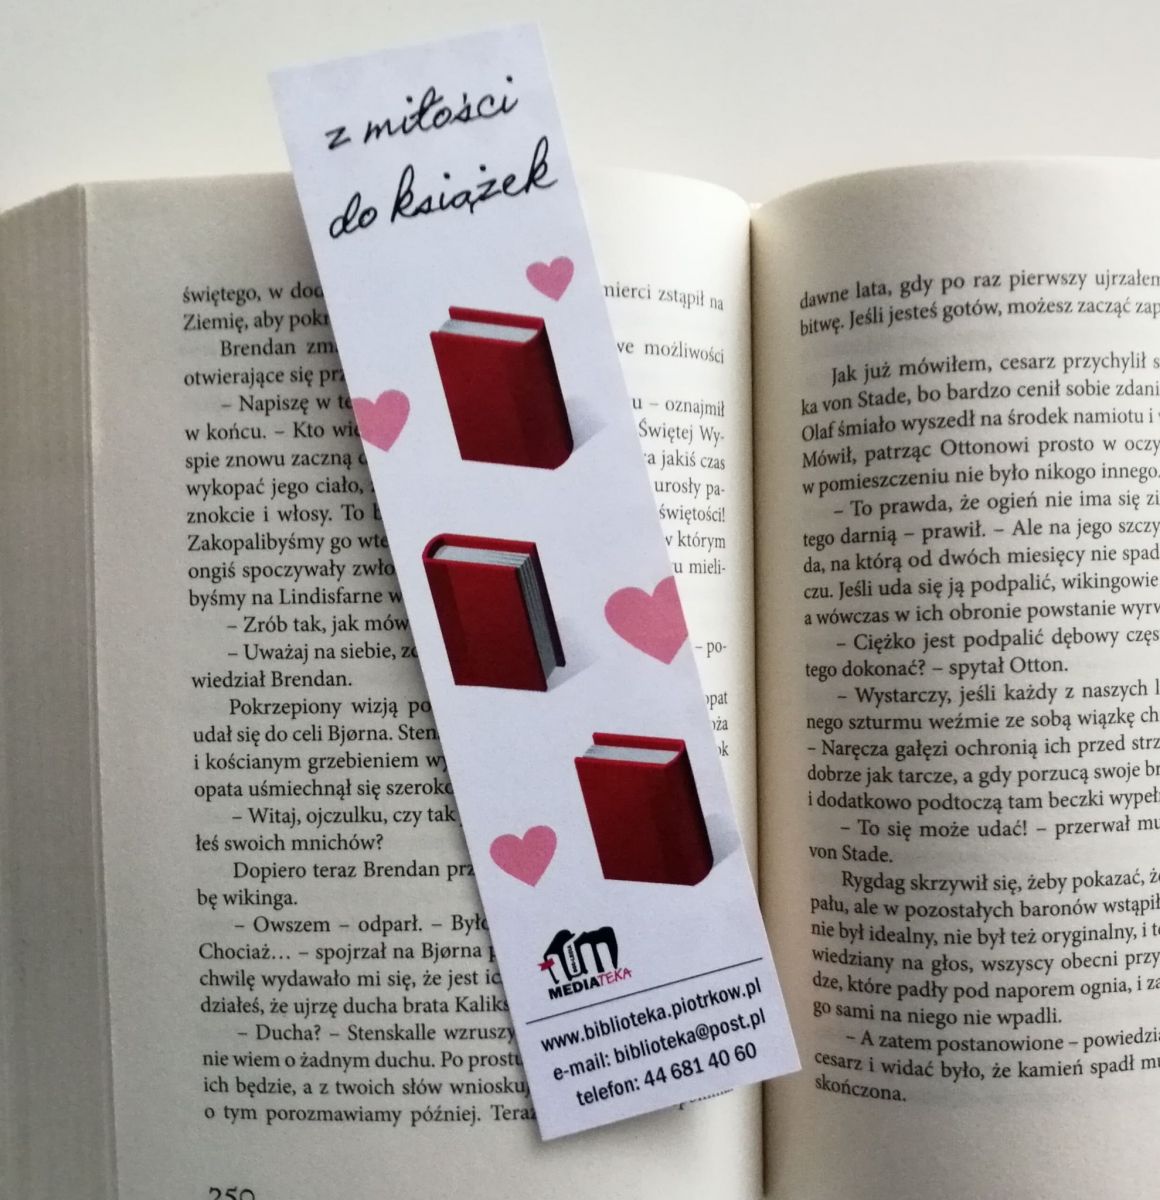 Zdjęcie przedstawia otwartą książkę fabularną, a na niej zakładka z napisem "Z miłości do książek", serduszkami i książkami.